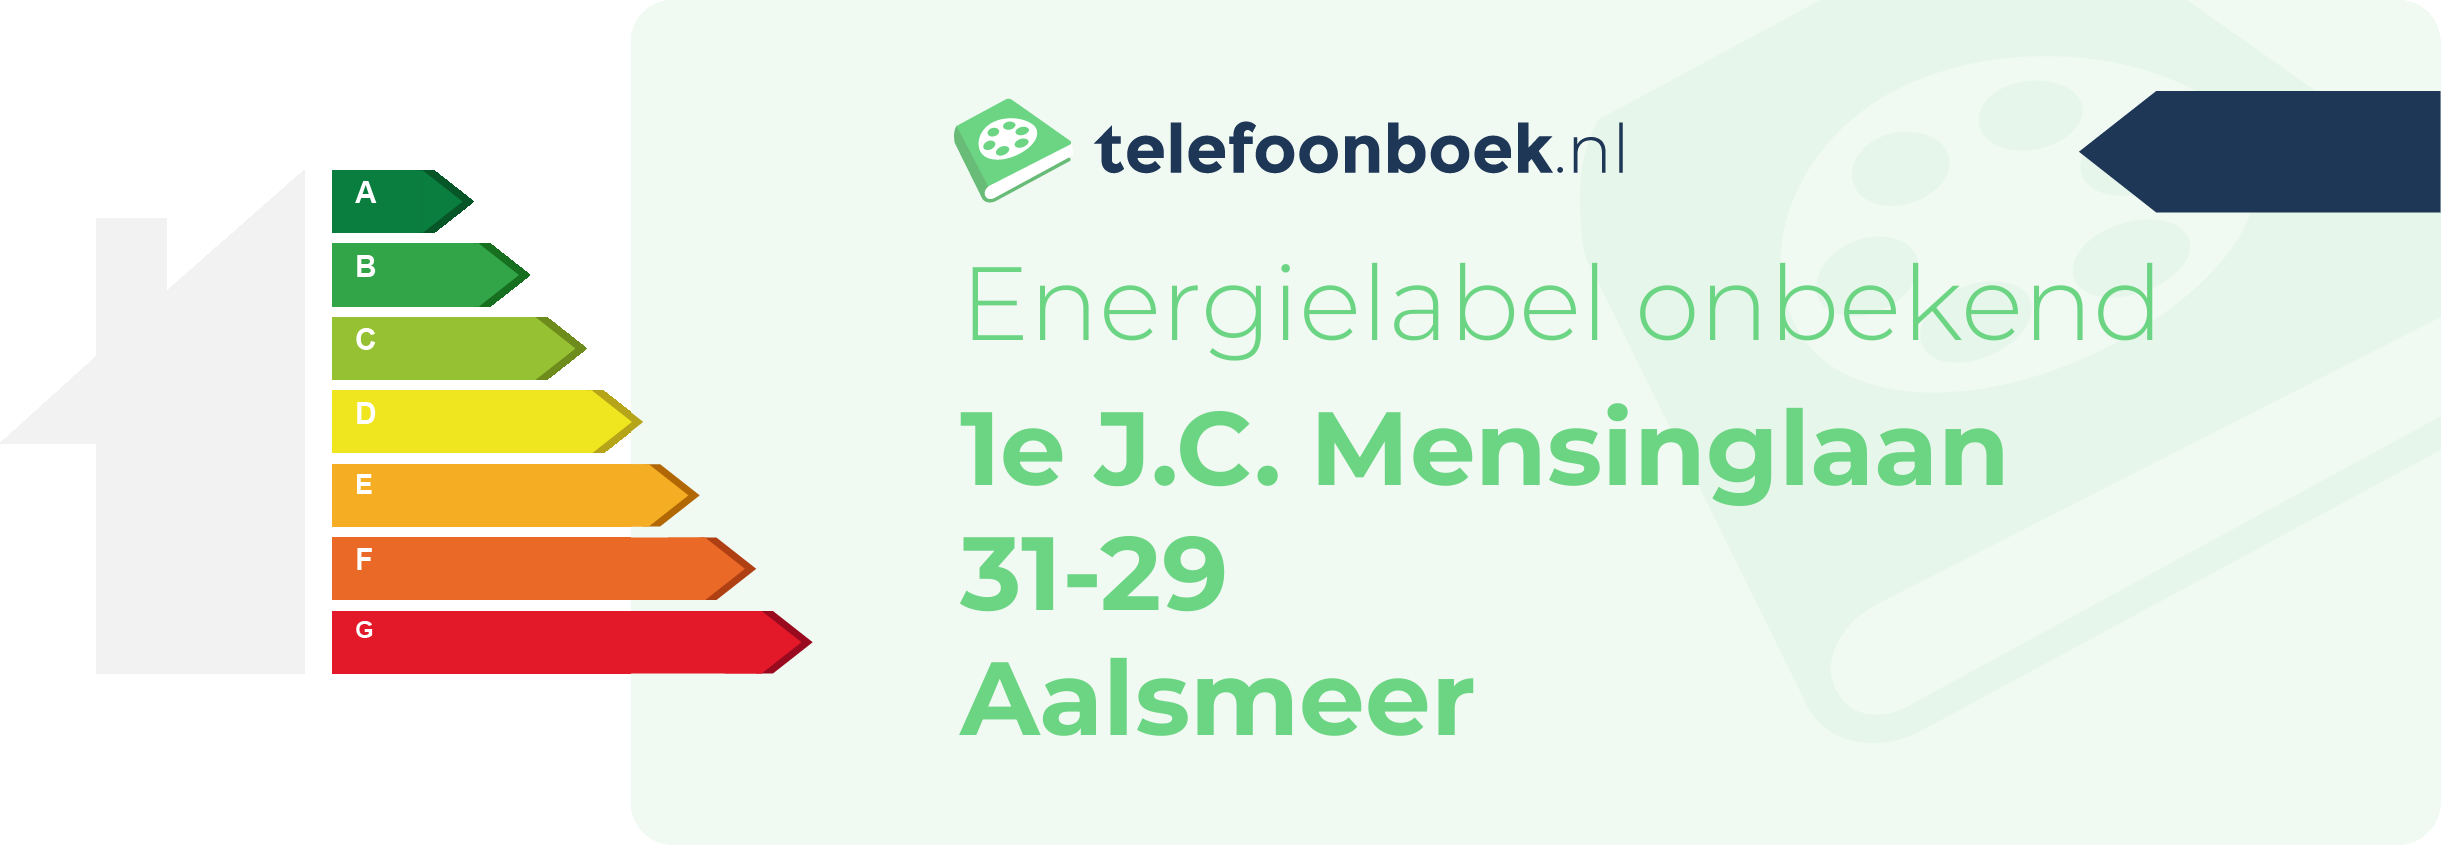 Energielabel 1e J.C. Mensinglaan 31-29 Aalsmeer